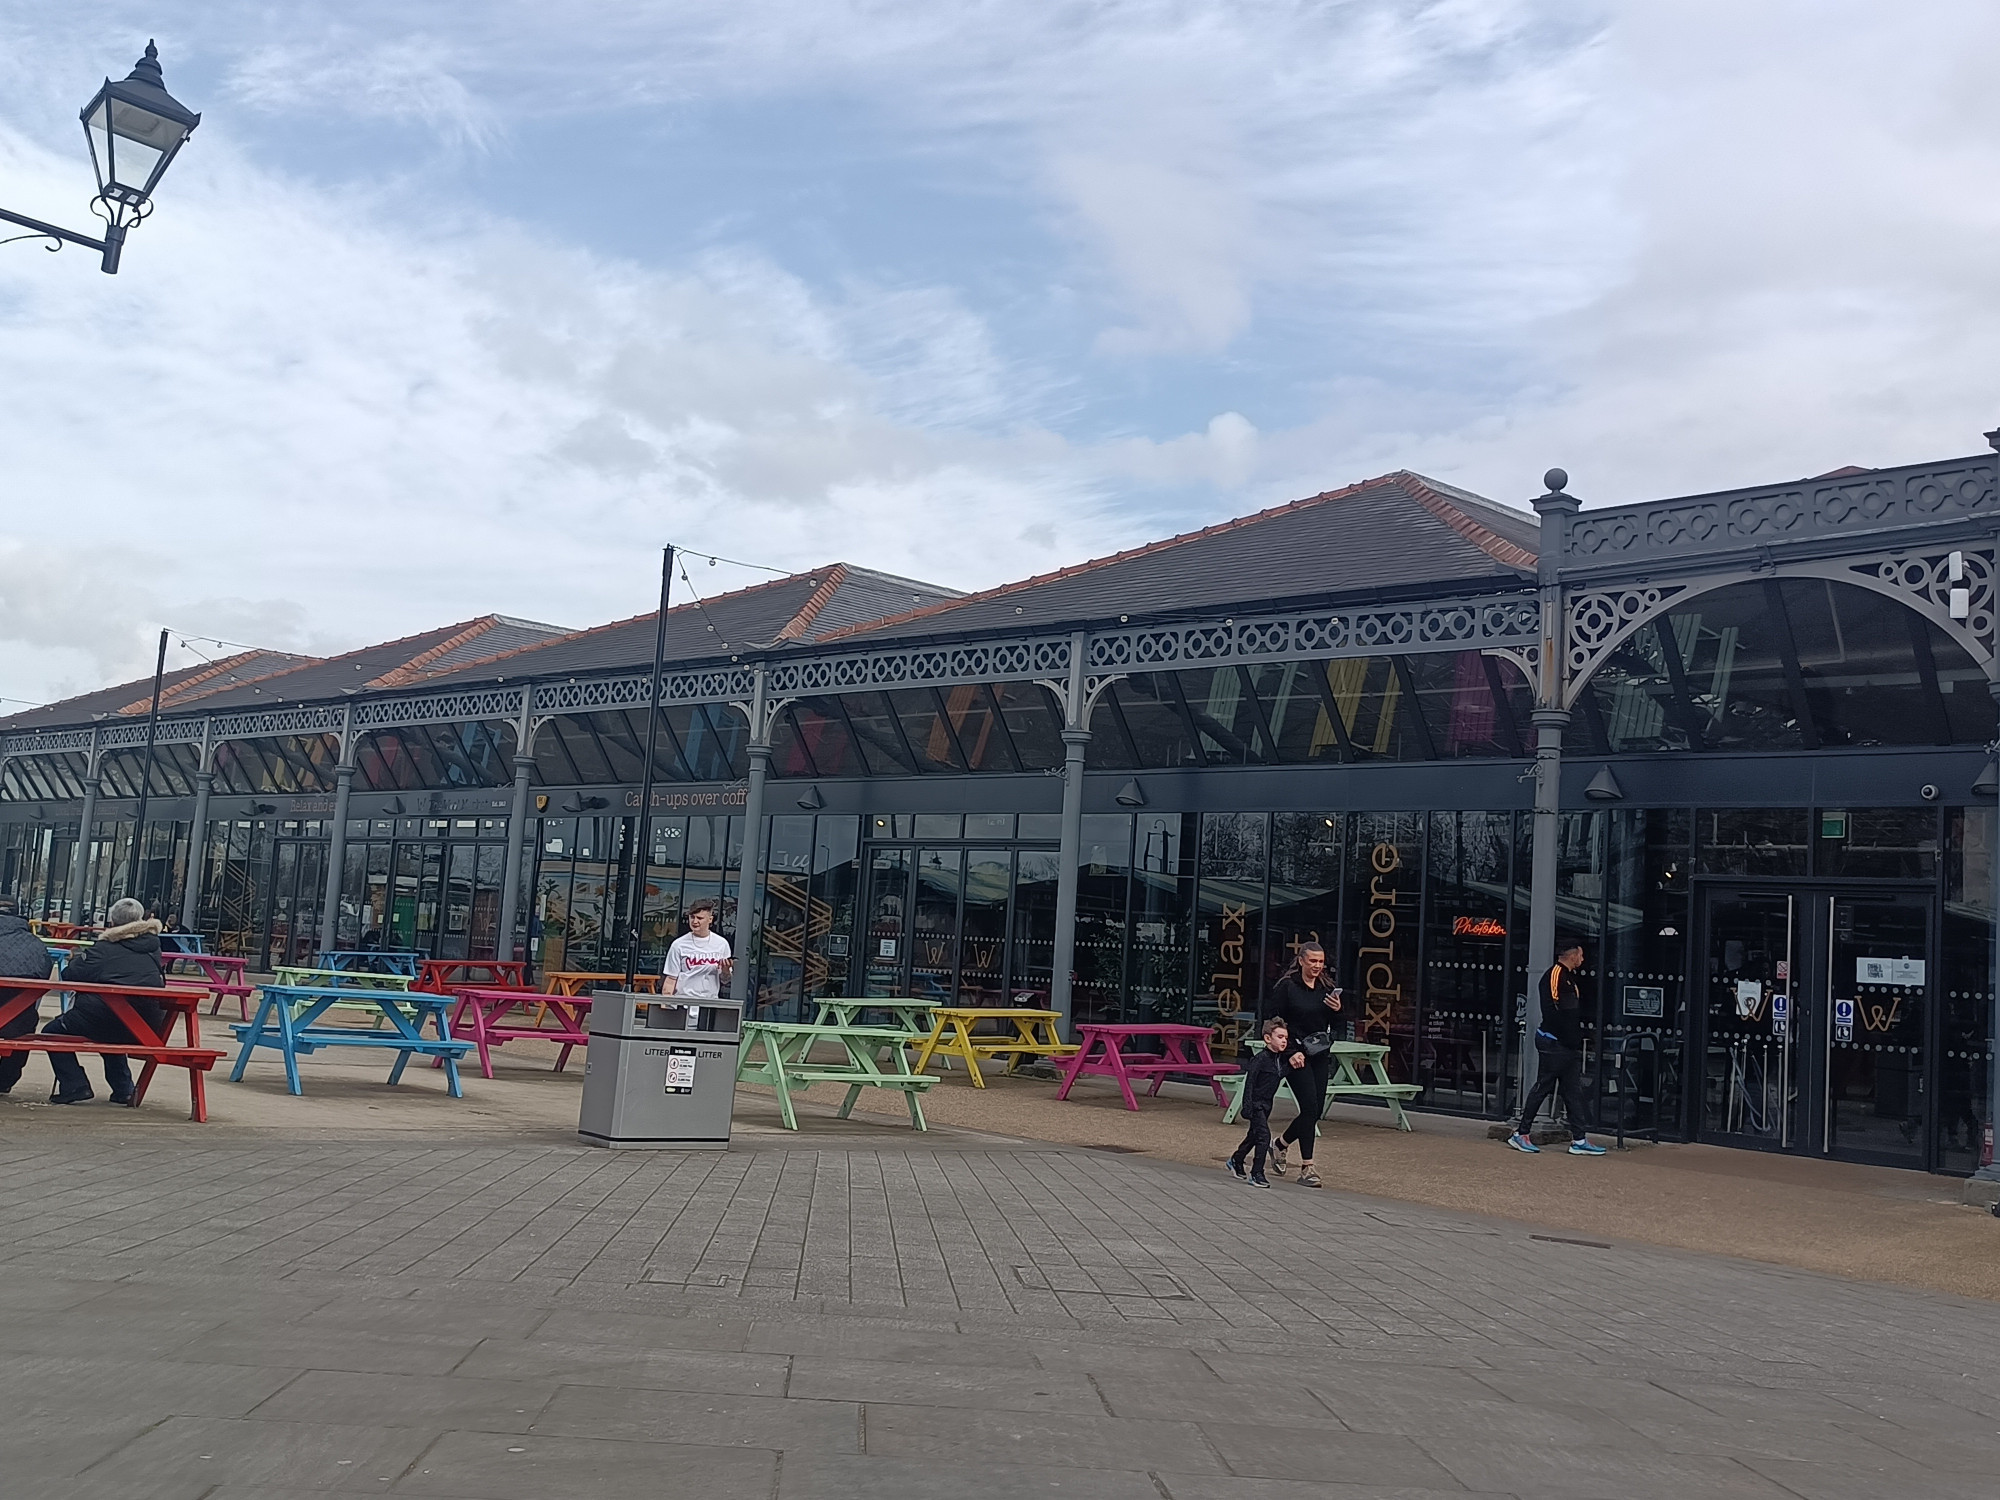 Market Doncaster, United Kingdom